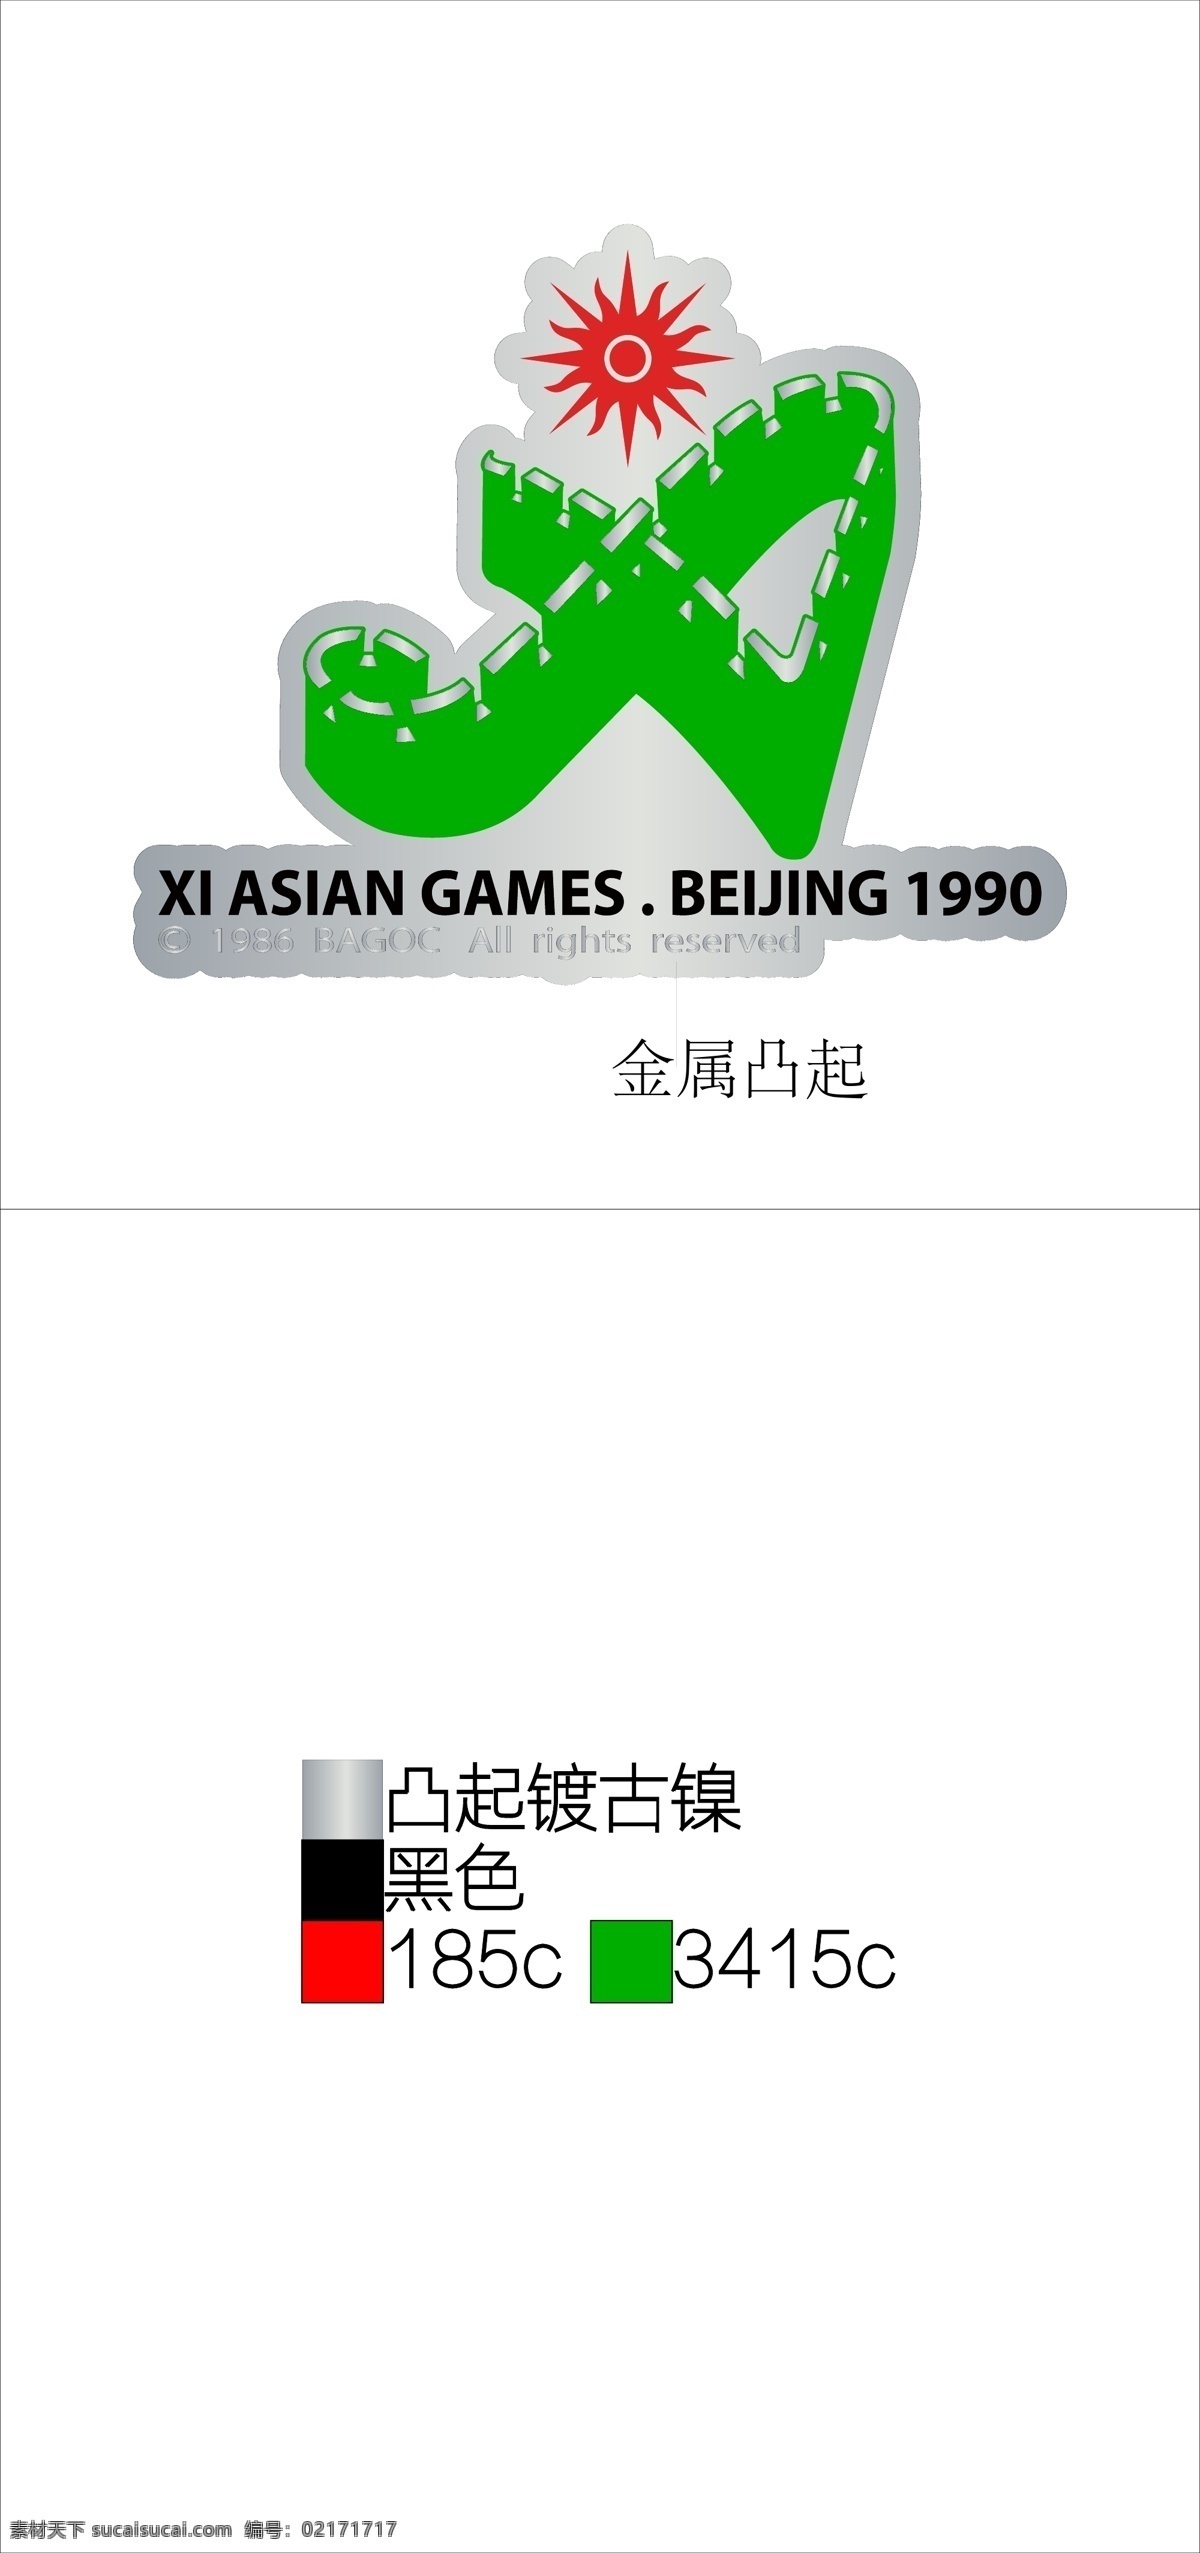 1990 年 北京 亚运 会徽 第十一届 亚运会 1990年 徽章 标志图标 其他图标